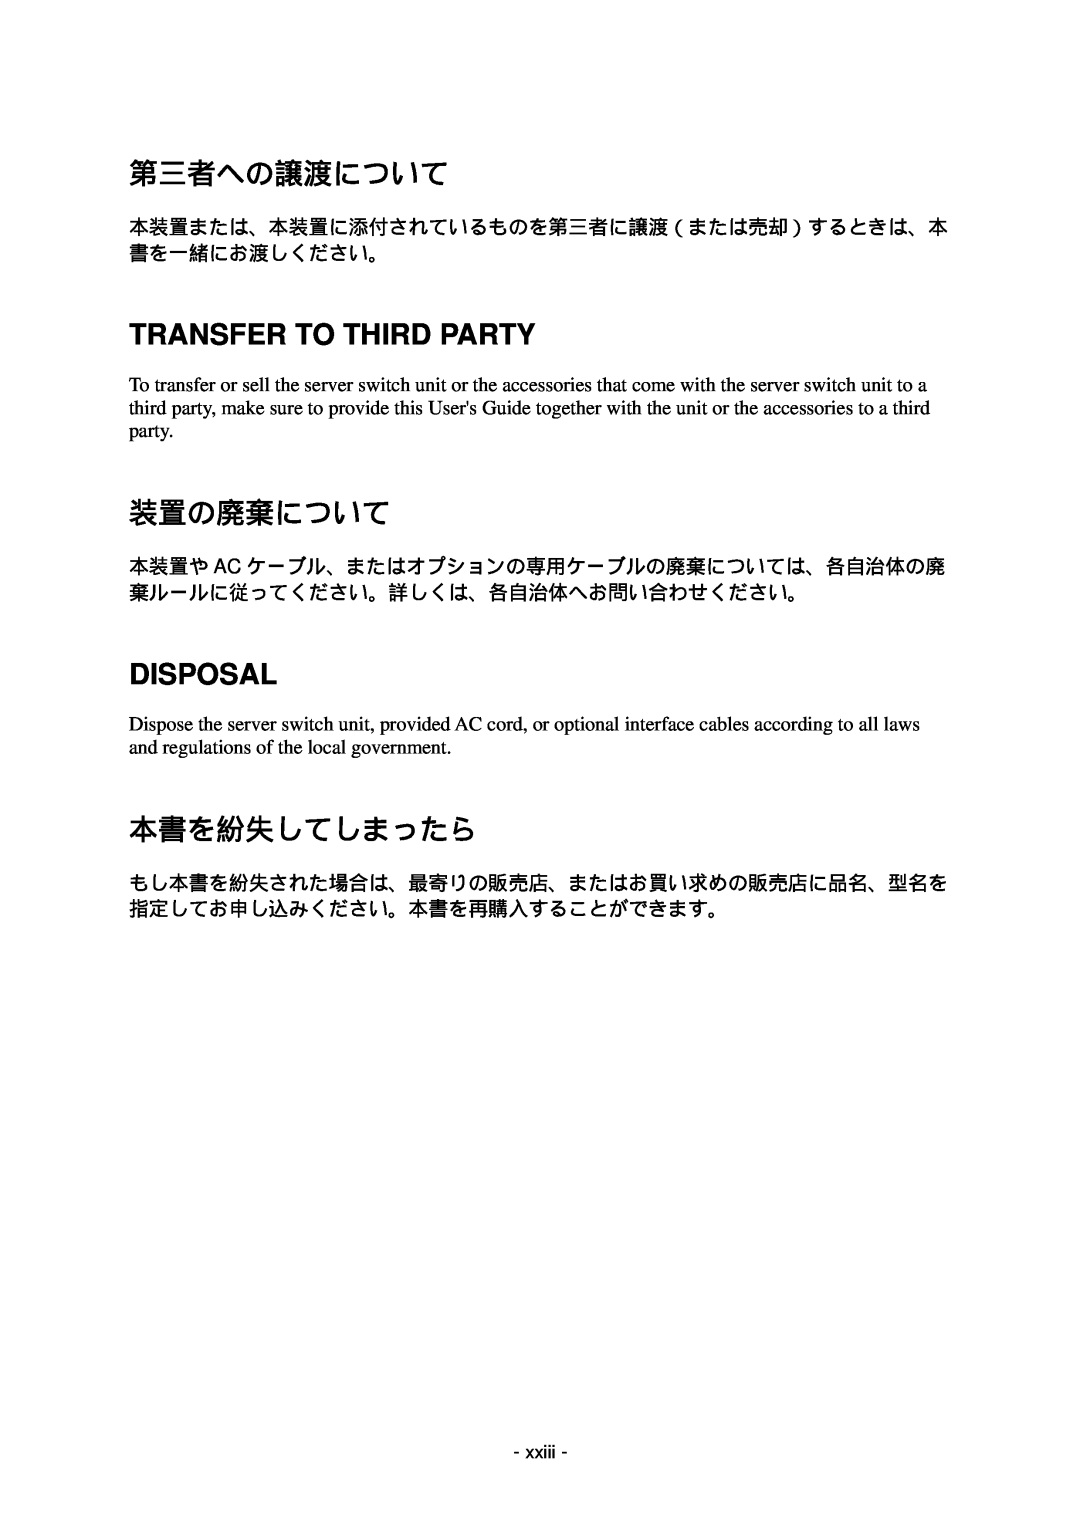 NEC N8191-09 manual 第三者への譲渡について, Transfer To Third Party, 装置の廃棄について, Disposal, 本書を紛失してしまったら 